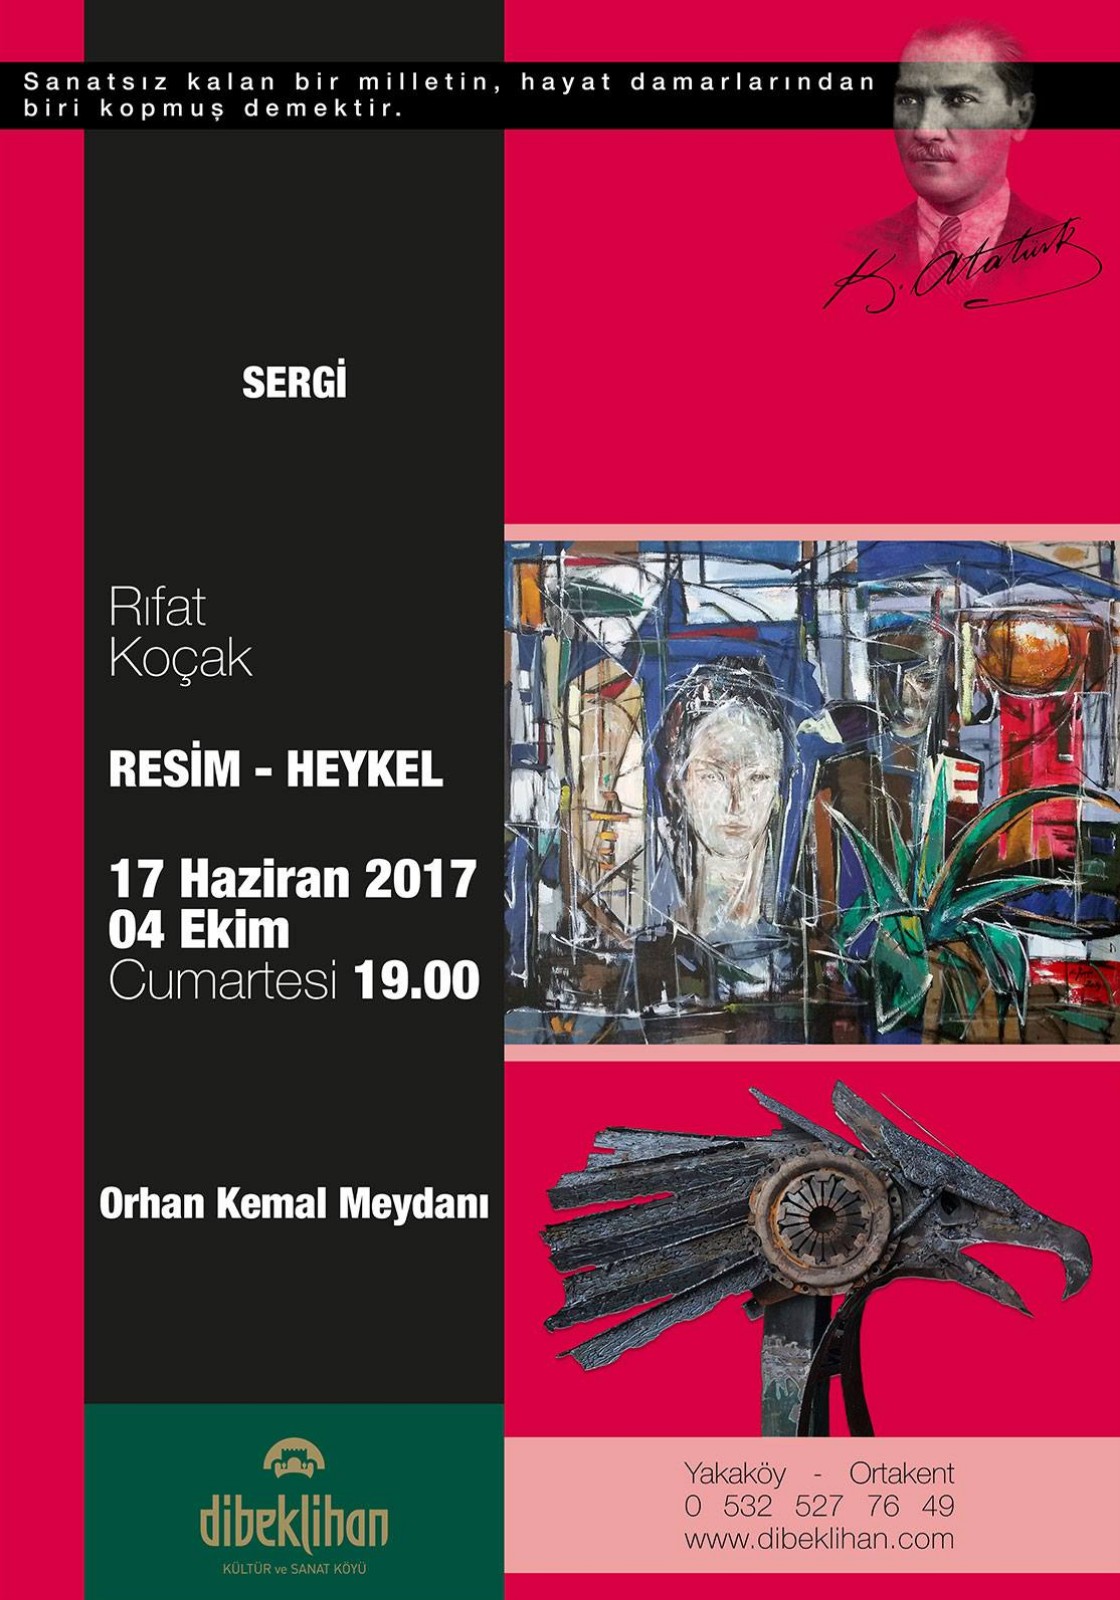 Resim - Heykel